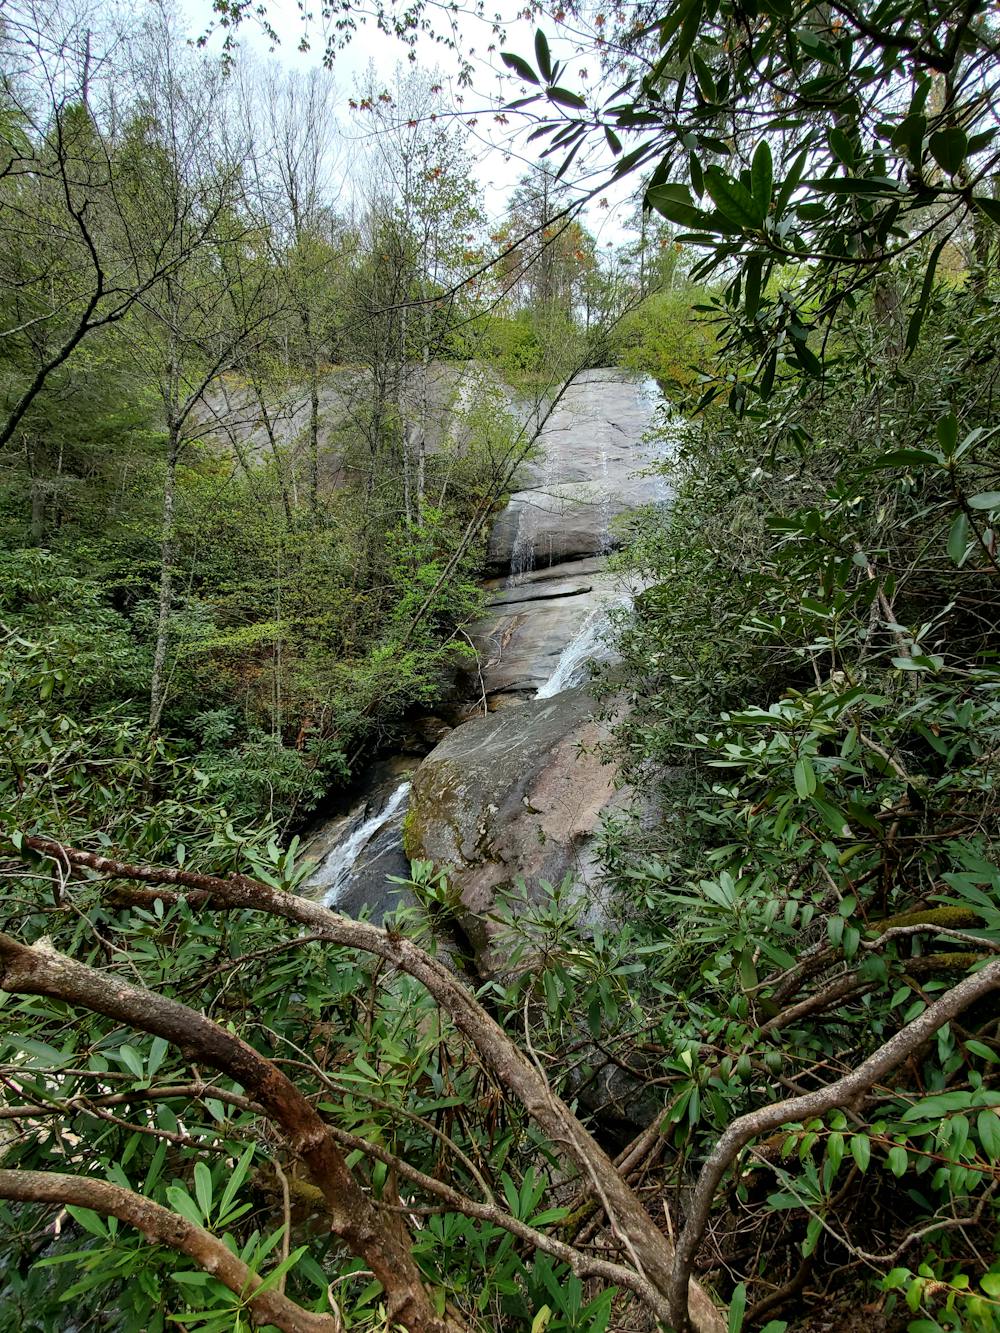 Wilderness Falls